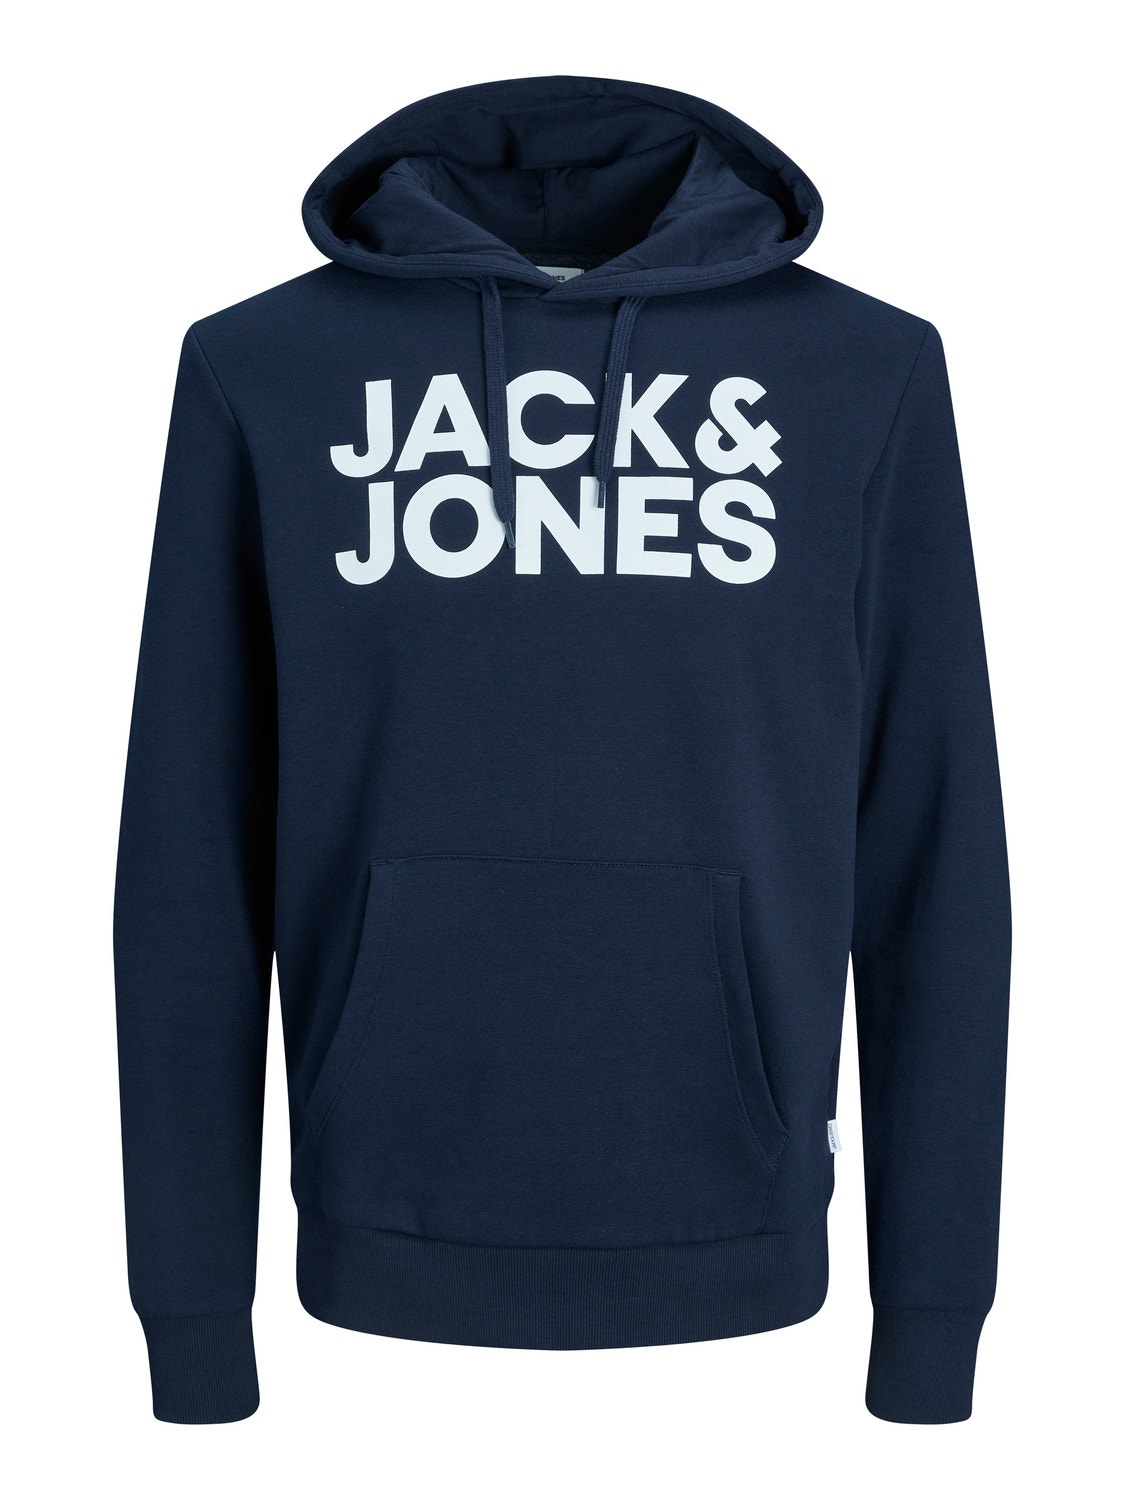 Jack & Jones Logotipas Megztinis su gobtuvu -Navy Blazer - 12152840